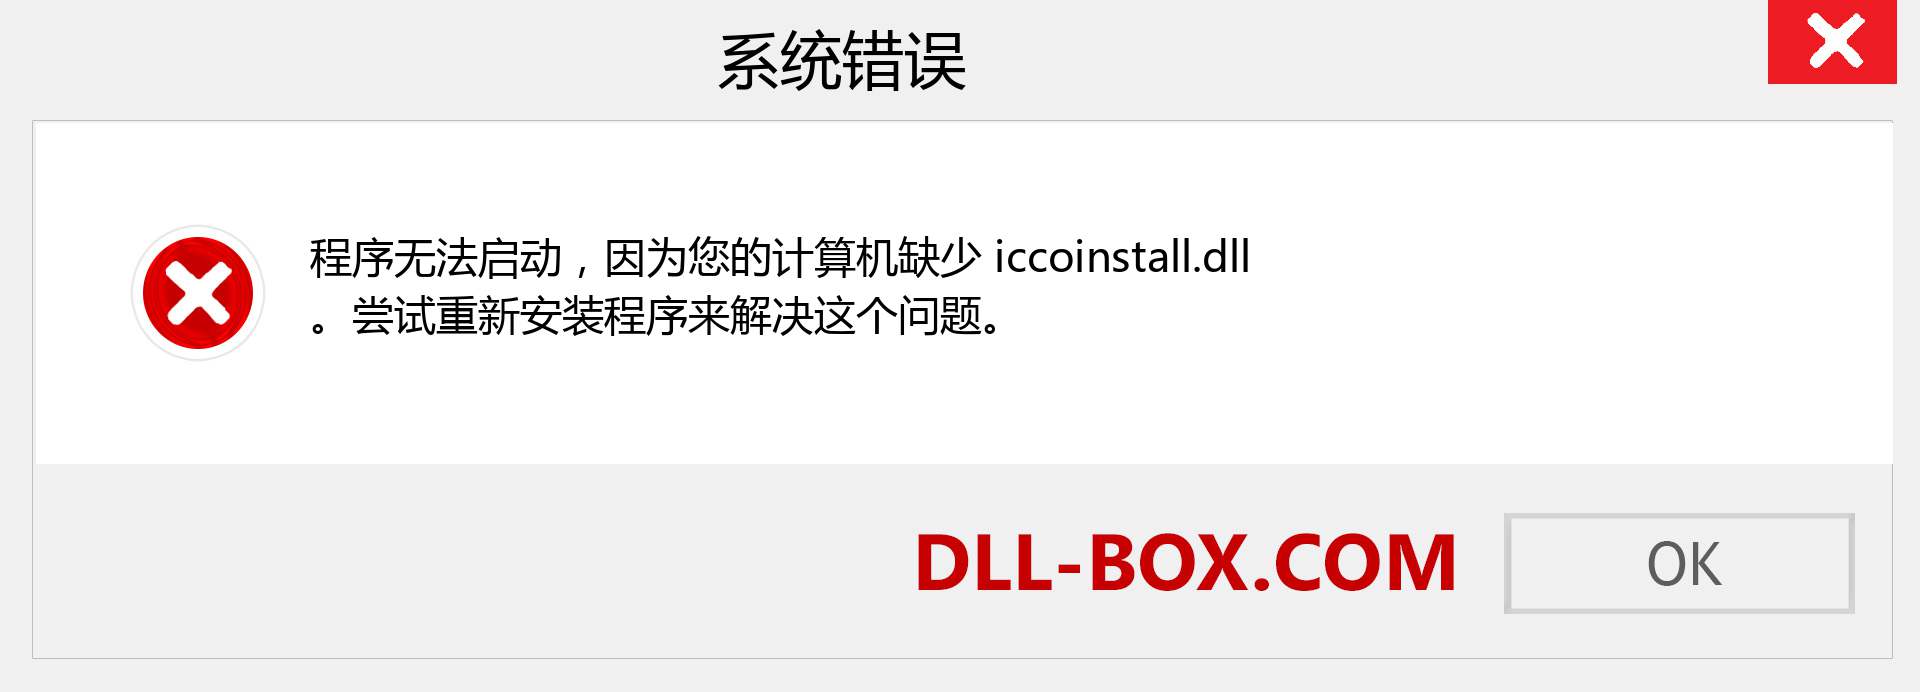 iccoinstall.dll 文件丢失？。 适用于 Windows 7、8、10 的下载 - 修复 Windows、照片、图像上的 iccoinstall dll 丢失错误